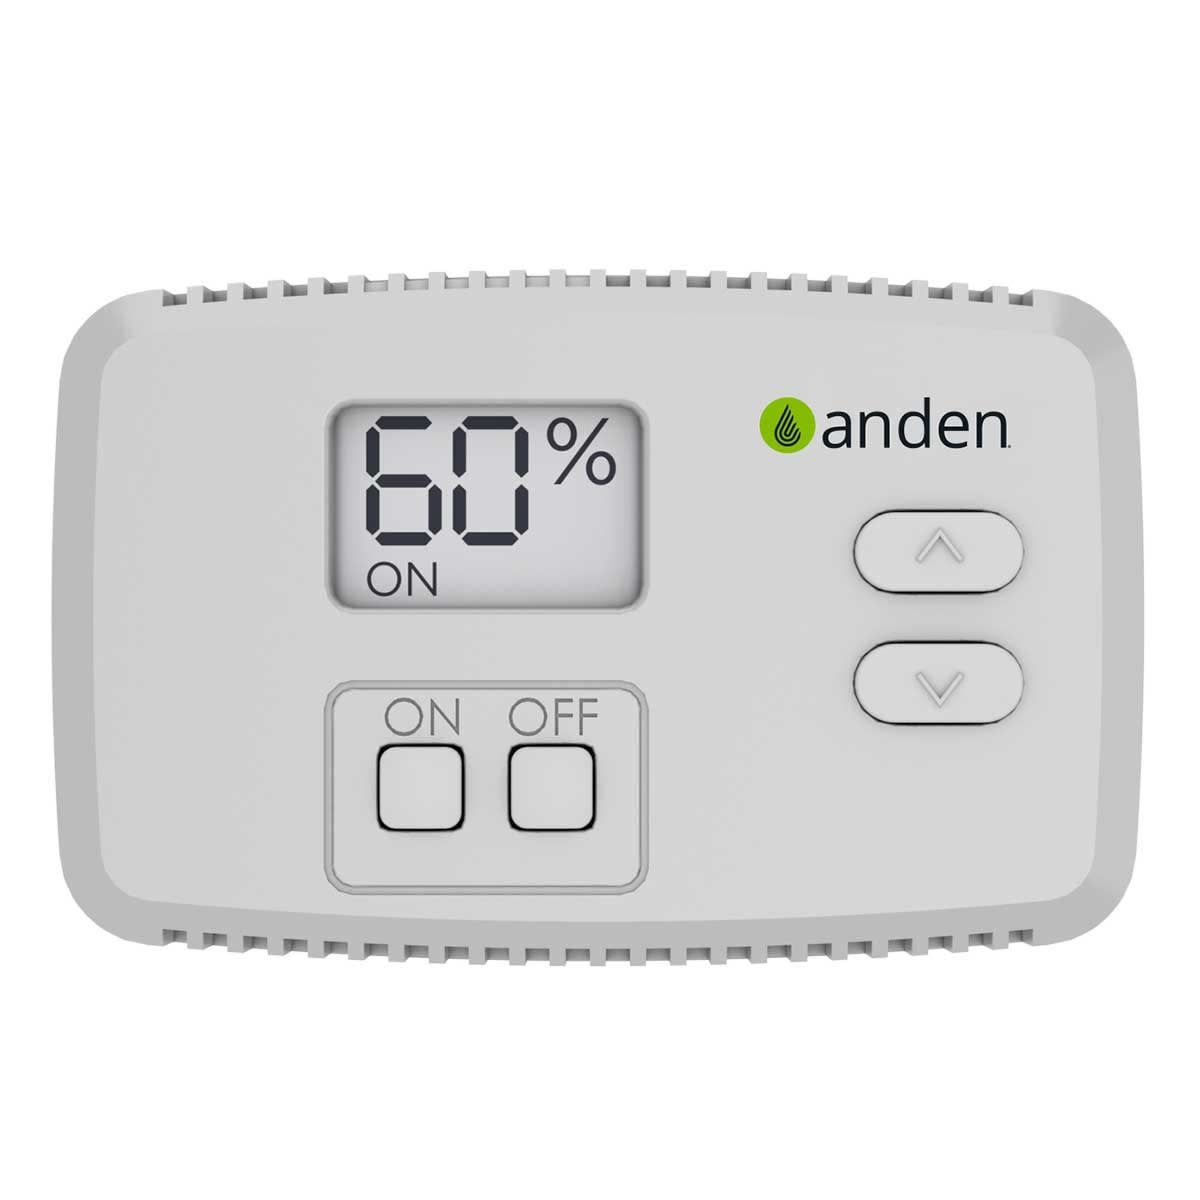 Anden Anden - Digital Dehumidifier Control Non-Programmable (A77)